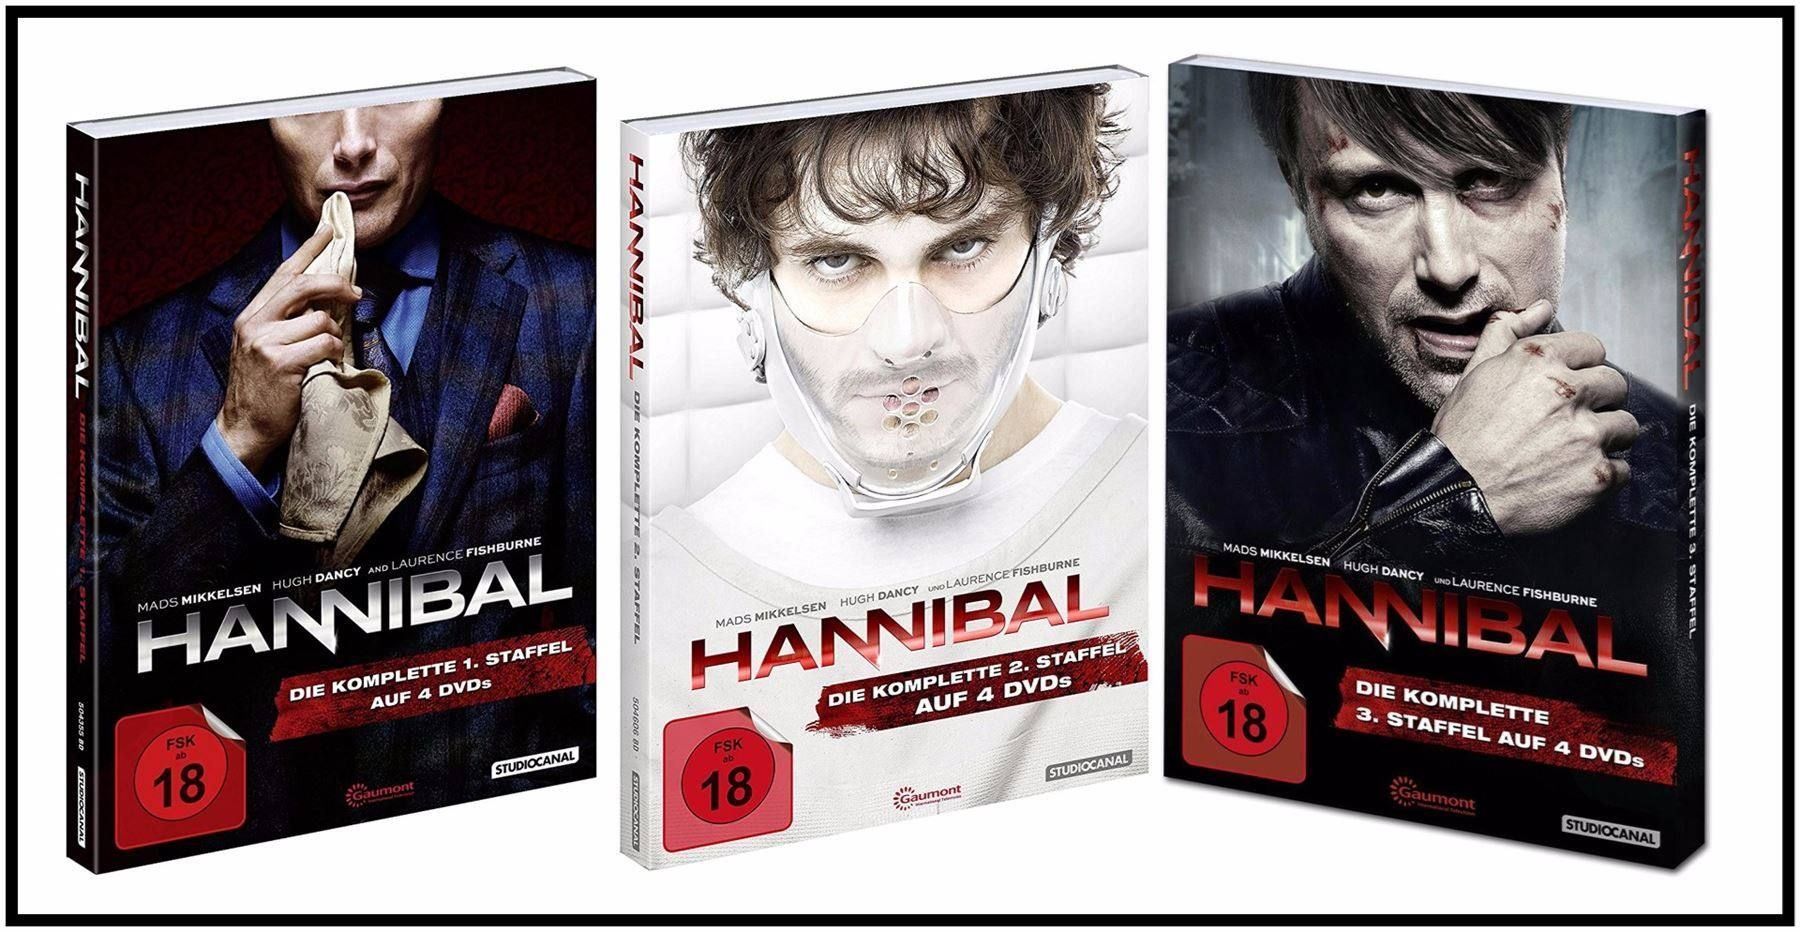 Hannibal Serie Staffel 3 Netflix